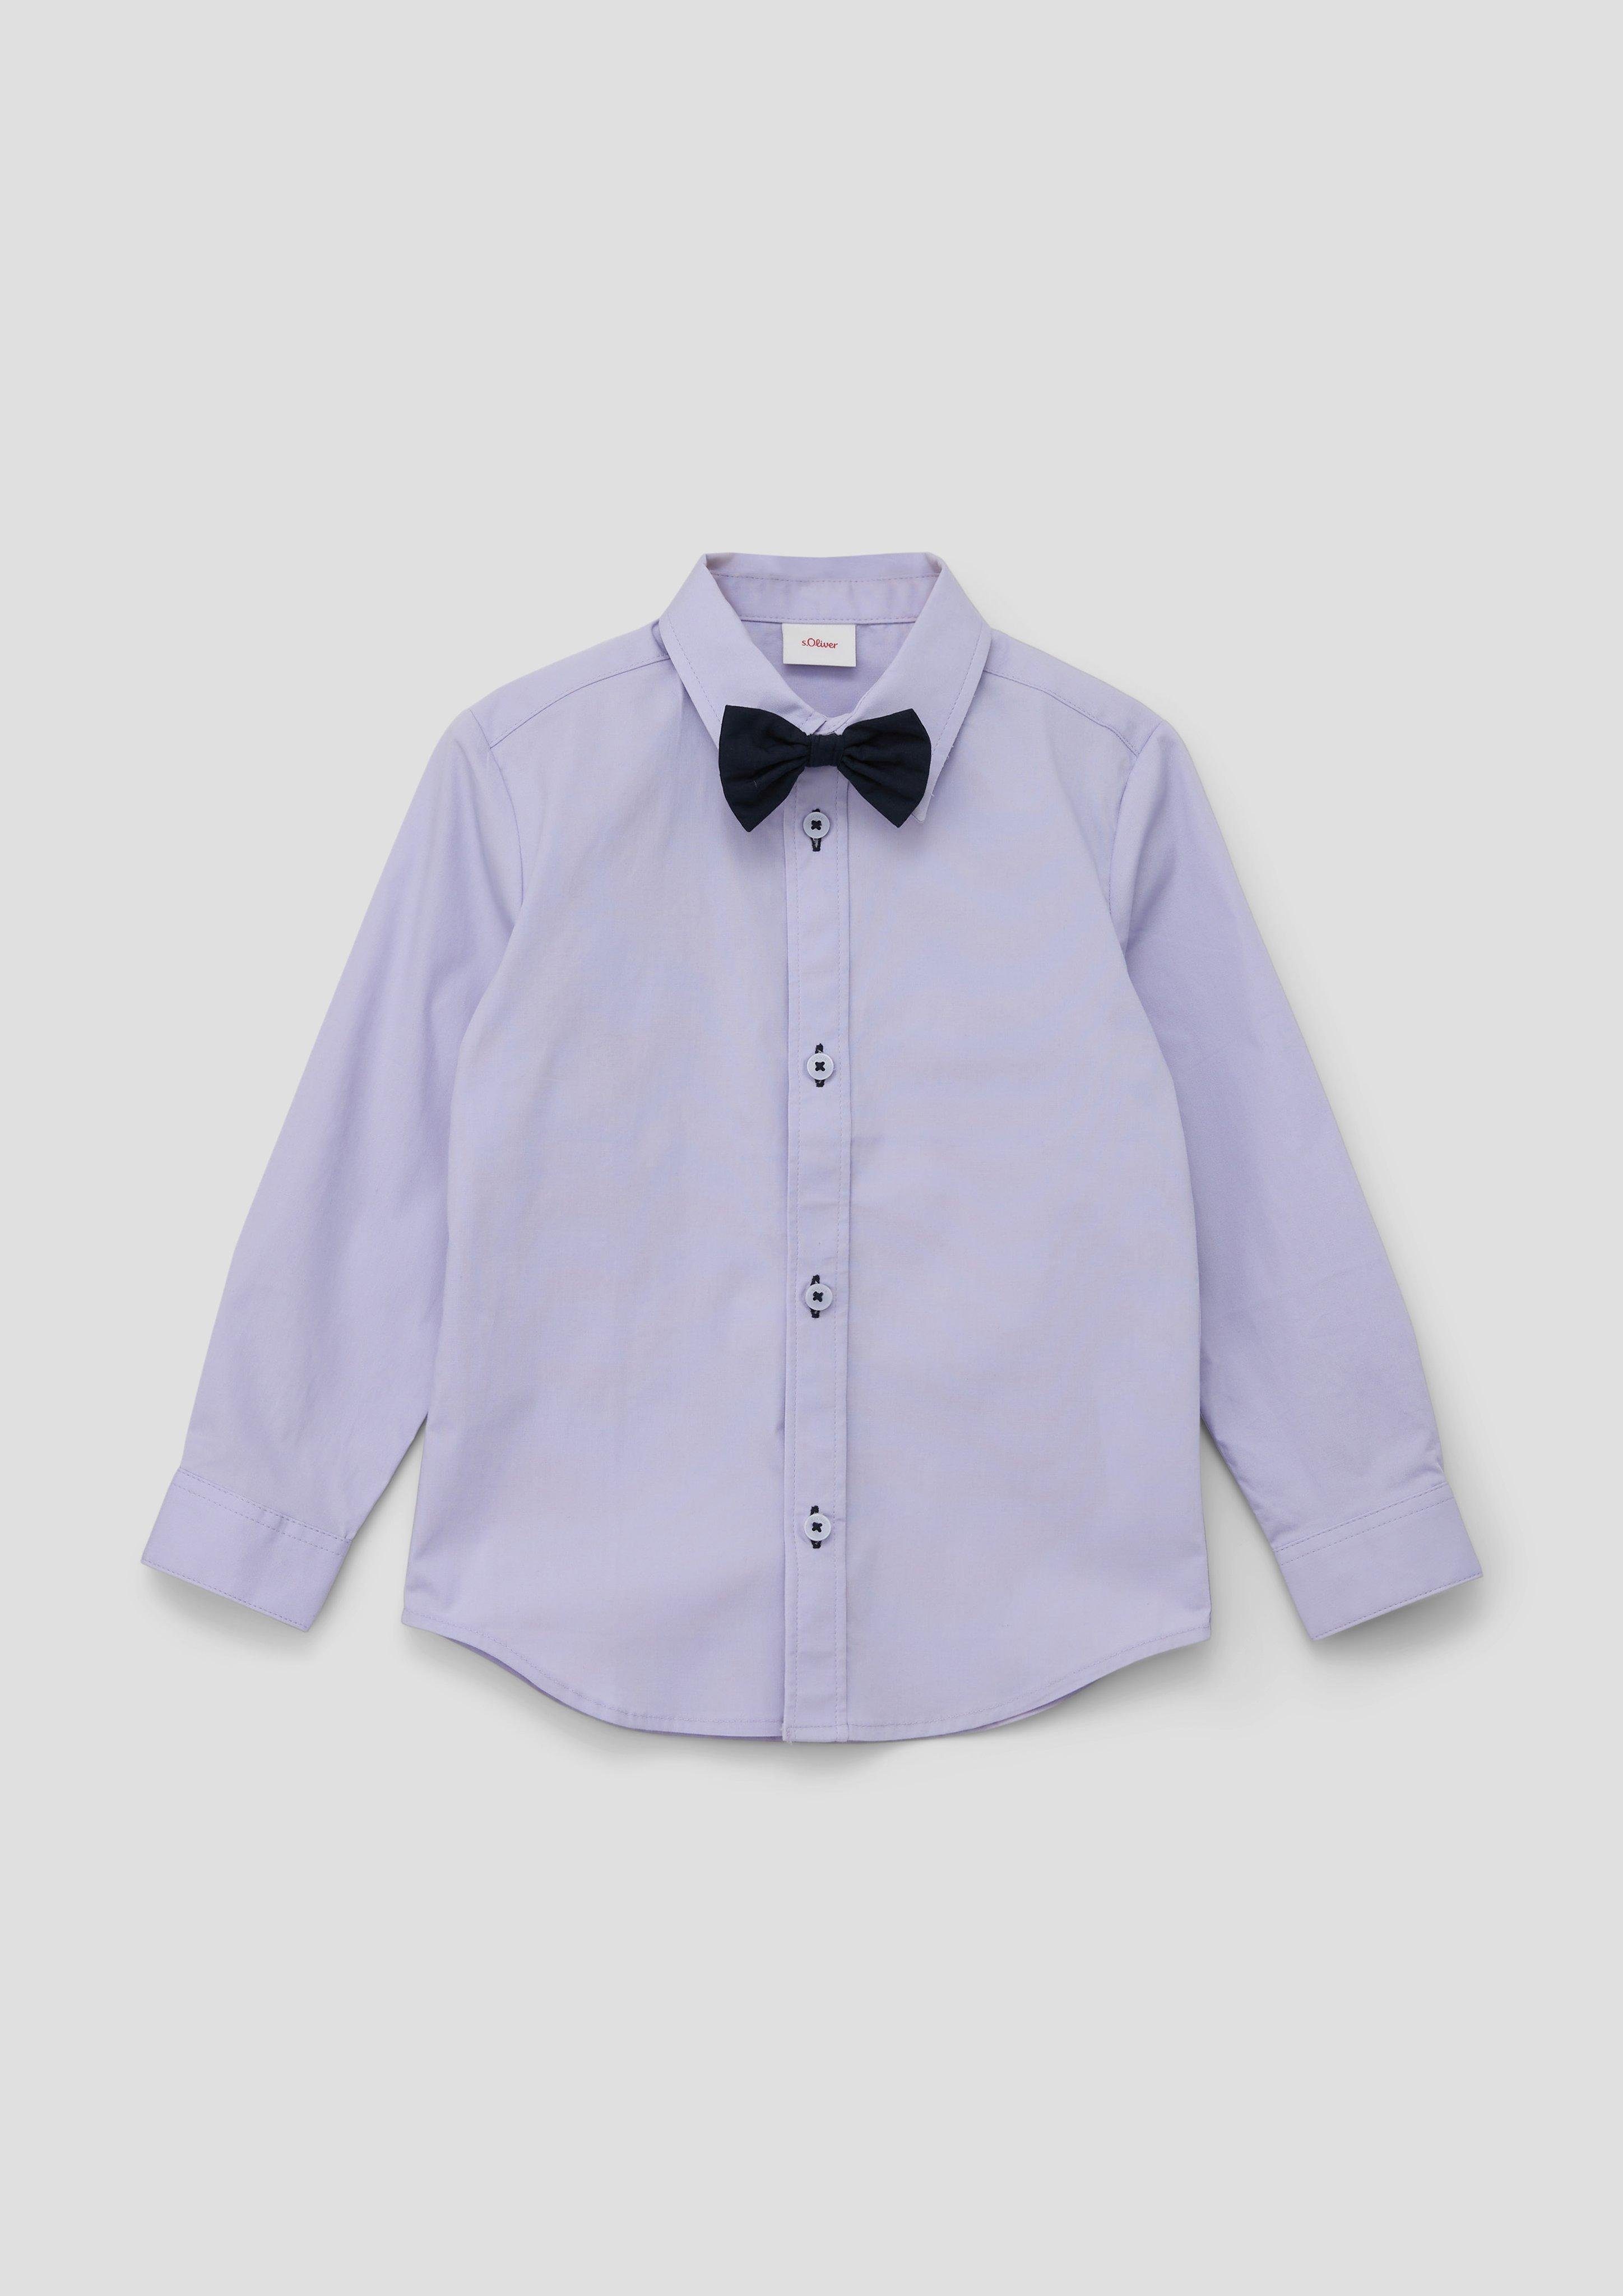 s.Oliver Langarmhemd Hemd aus aus abnehmbarer Popeline, Baumwollmix, elastisch mit Fliege